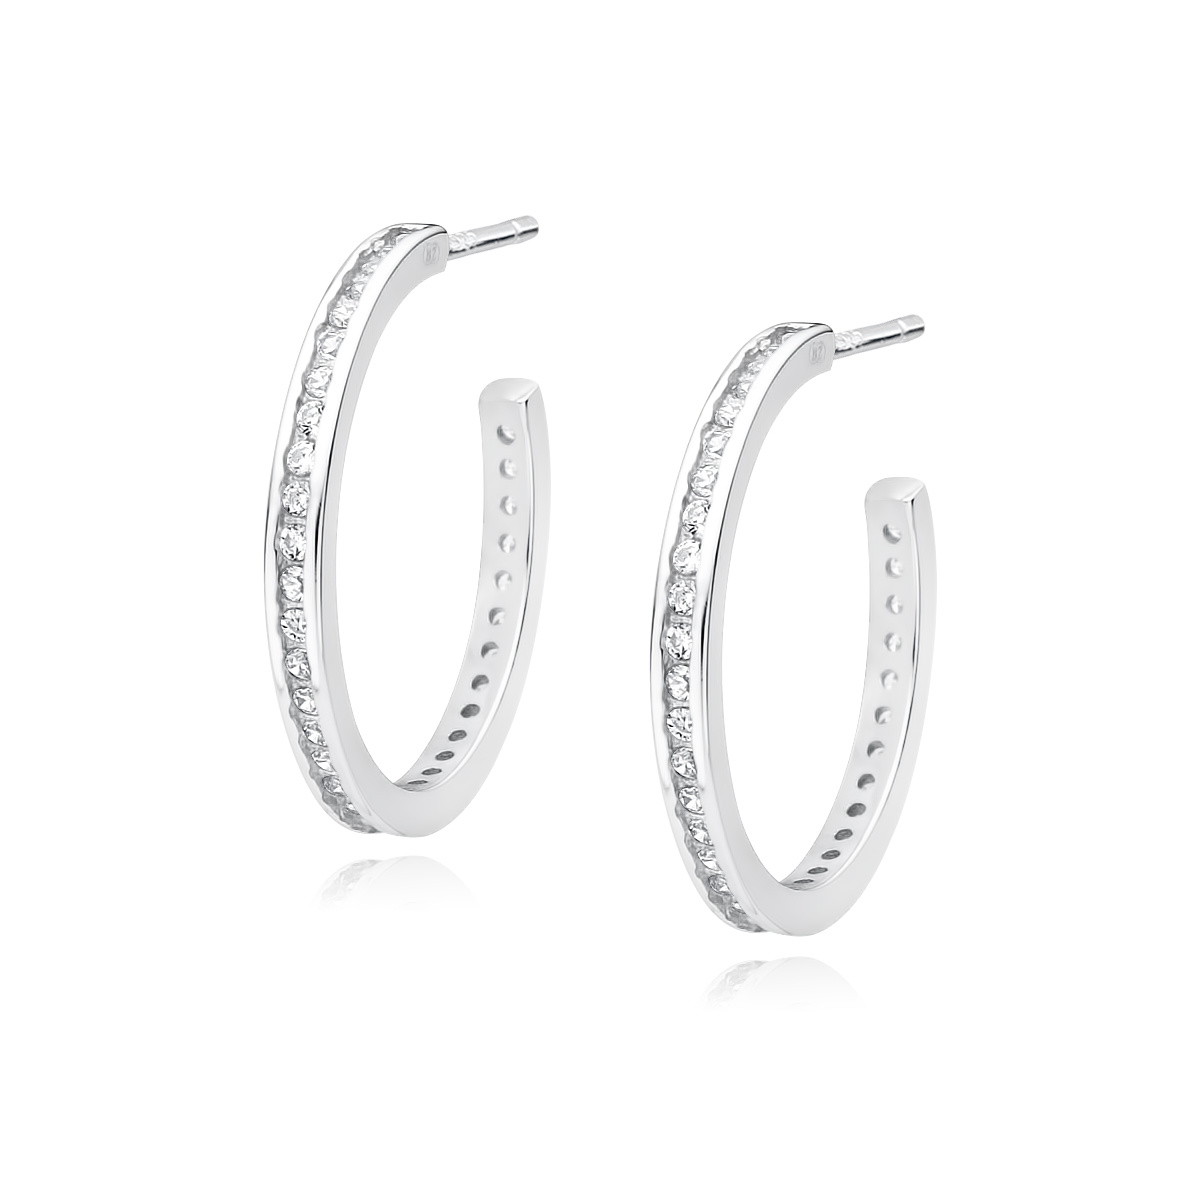 Vrijgevig Bijproduct worstelen Zilveren oorbellen: Creool met witte zirkonia steentjes - Juwelen 4 Kids